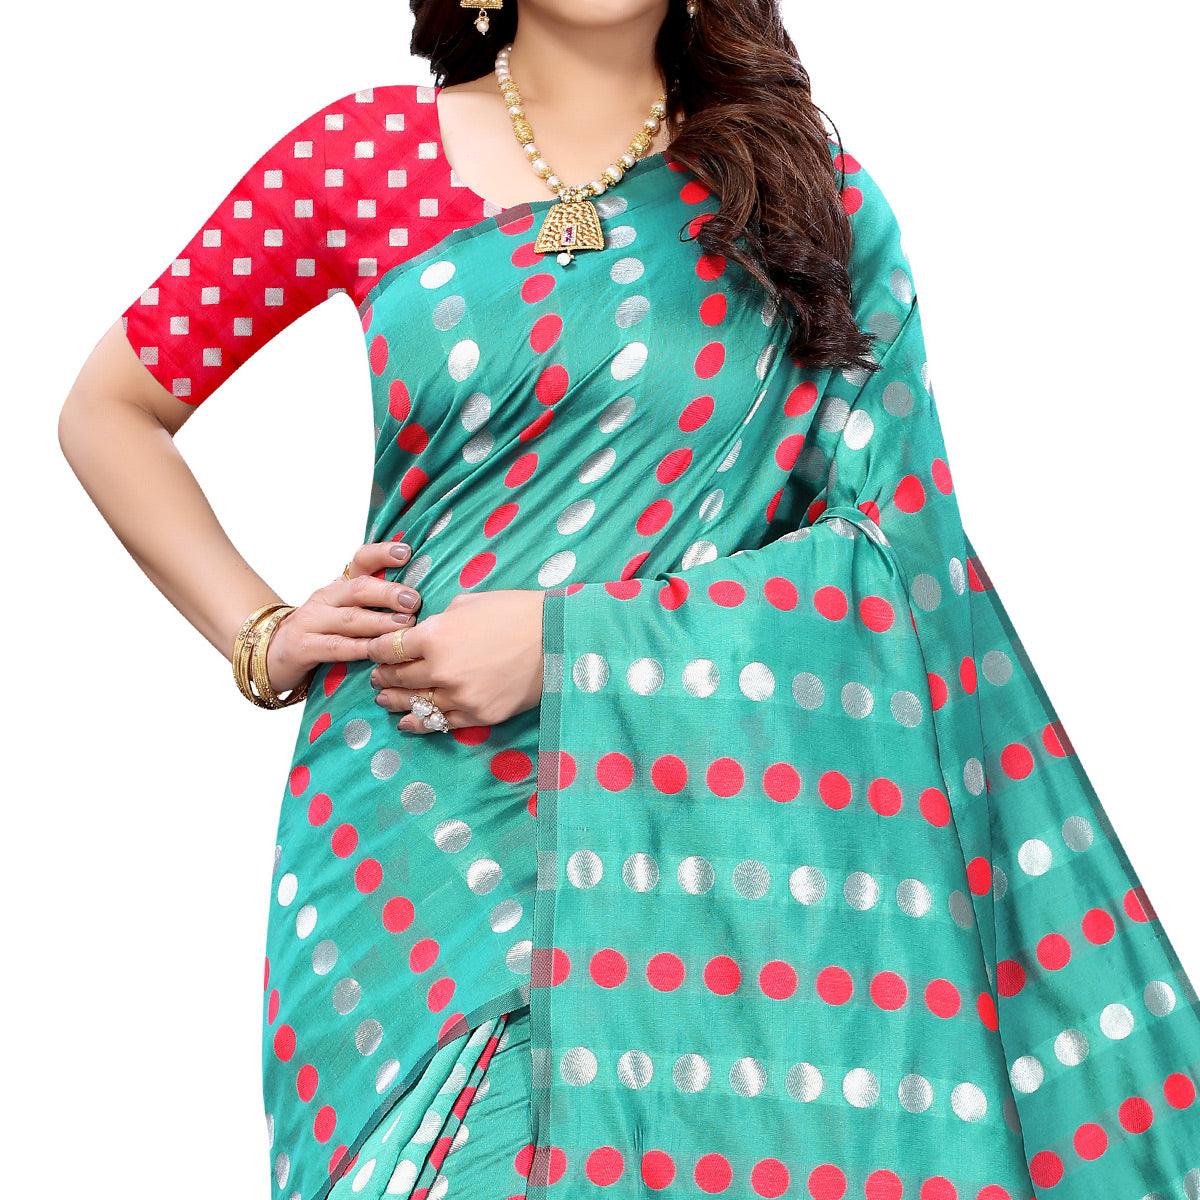 Sea Green Casual Wear Woven Banarasi Silk Saree - Peachmode